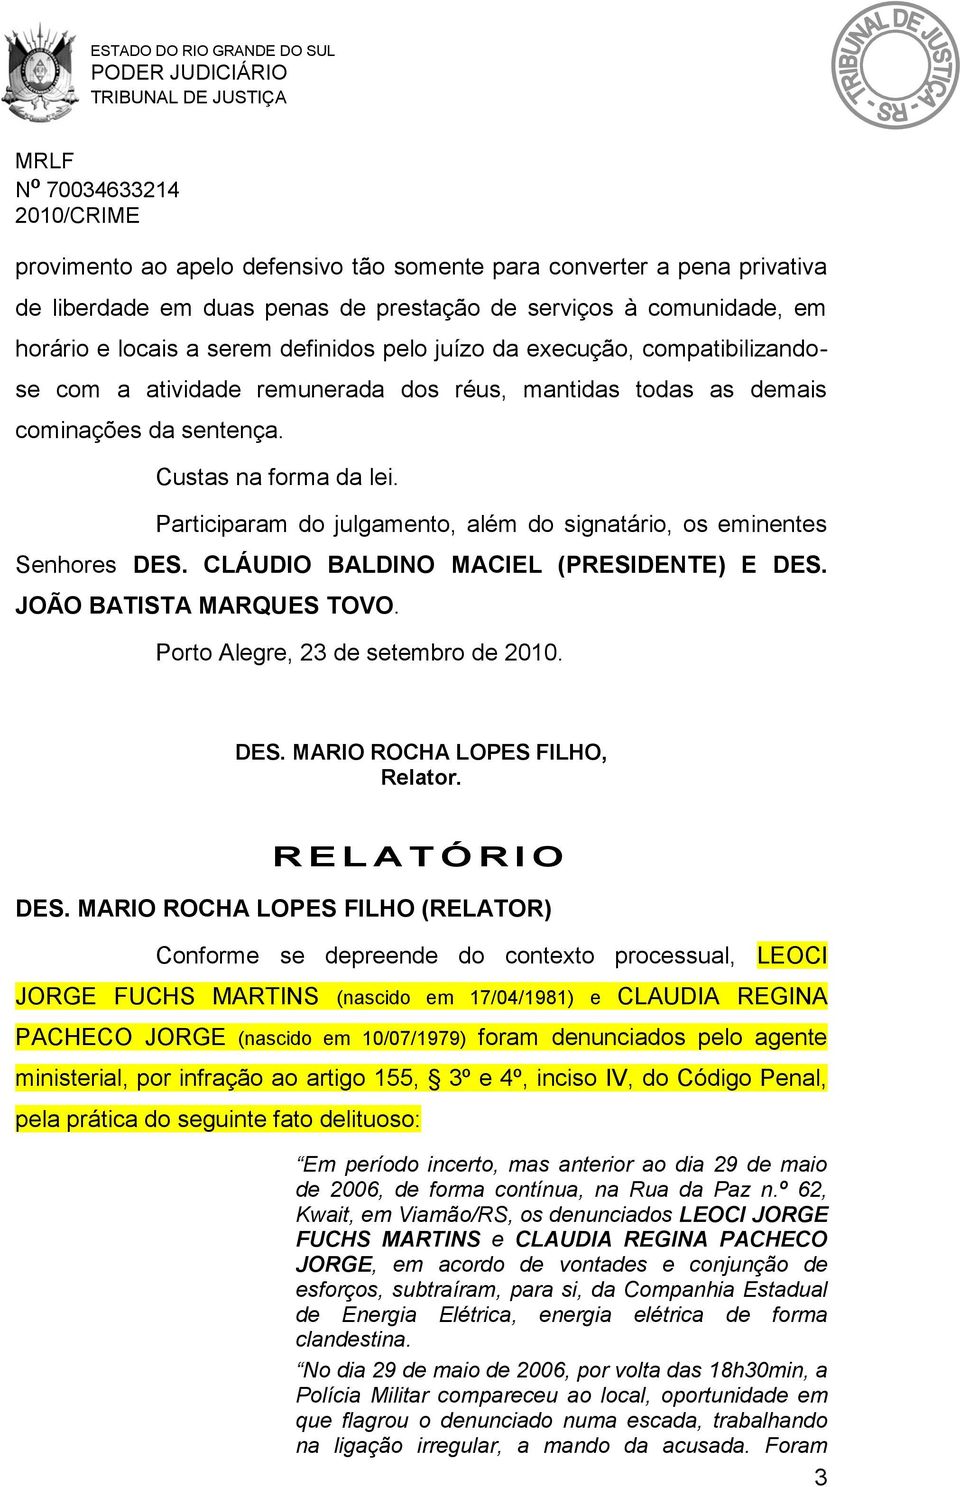 Participaram do julgamento, além do signatário, os eminentes Senhores DES. CLÁUDIO BALDINO MACIEL (PRESIDENTE) E DES. JOÃO BATISTA MARQUES TOVO. Porto Alegre, 23 de setembro de 2010. DES. MARIO ROCHA LOPES FILHO, Relator.